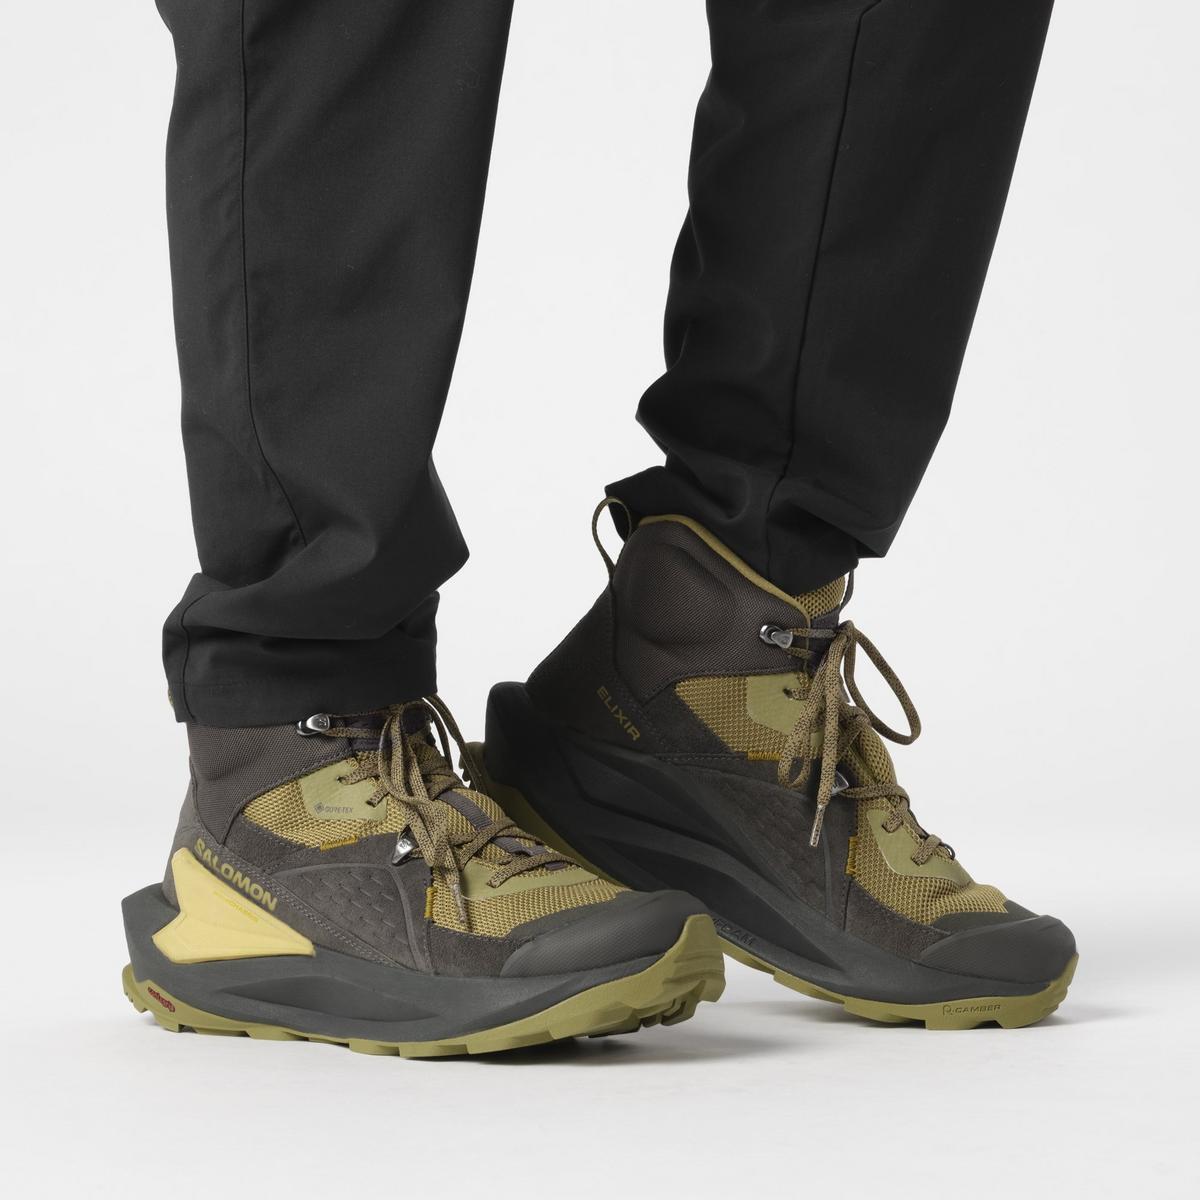 Salomon Men's Elixir Mid GORE-TEX Hiking Boots - Green